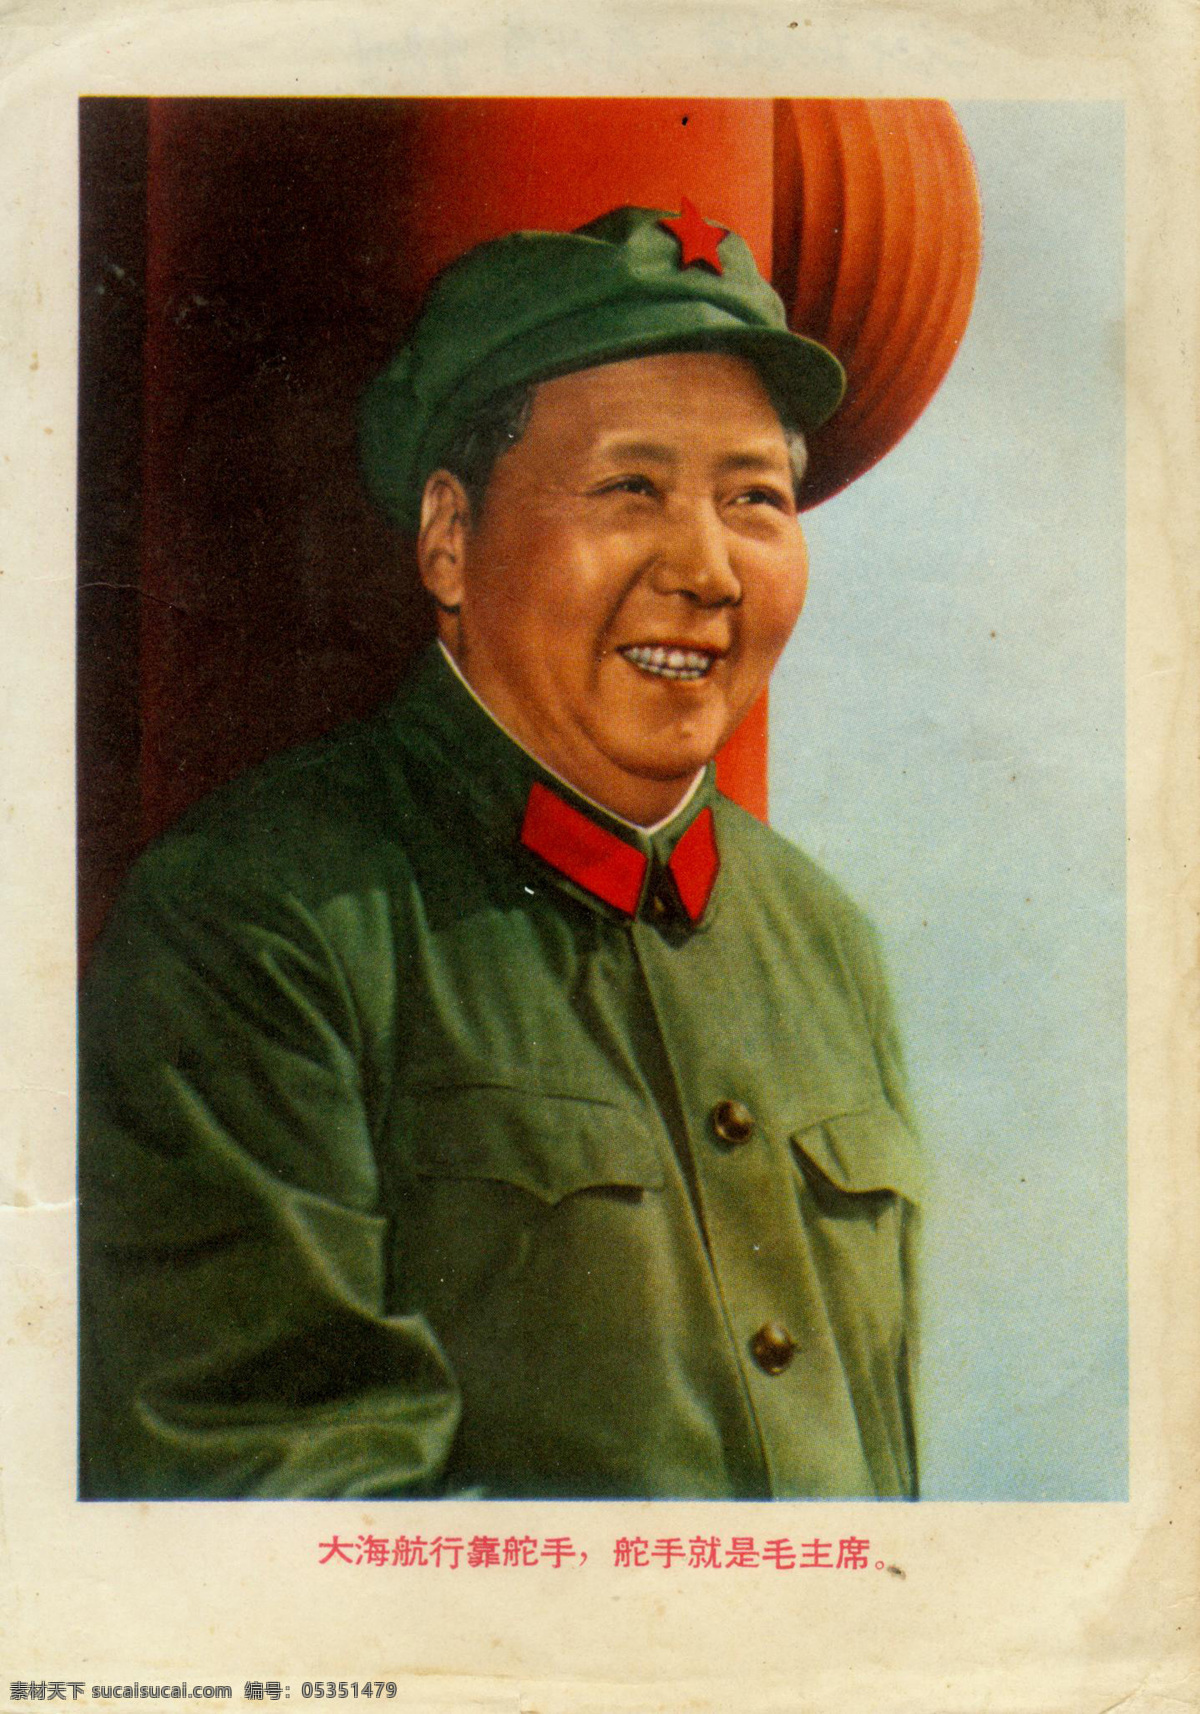 文革宣传画 大海 航行 舵手 就是 毛 主席 文革 宣传画 画 宣传 革命 毛主席 绘画书法 文化艺术